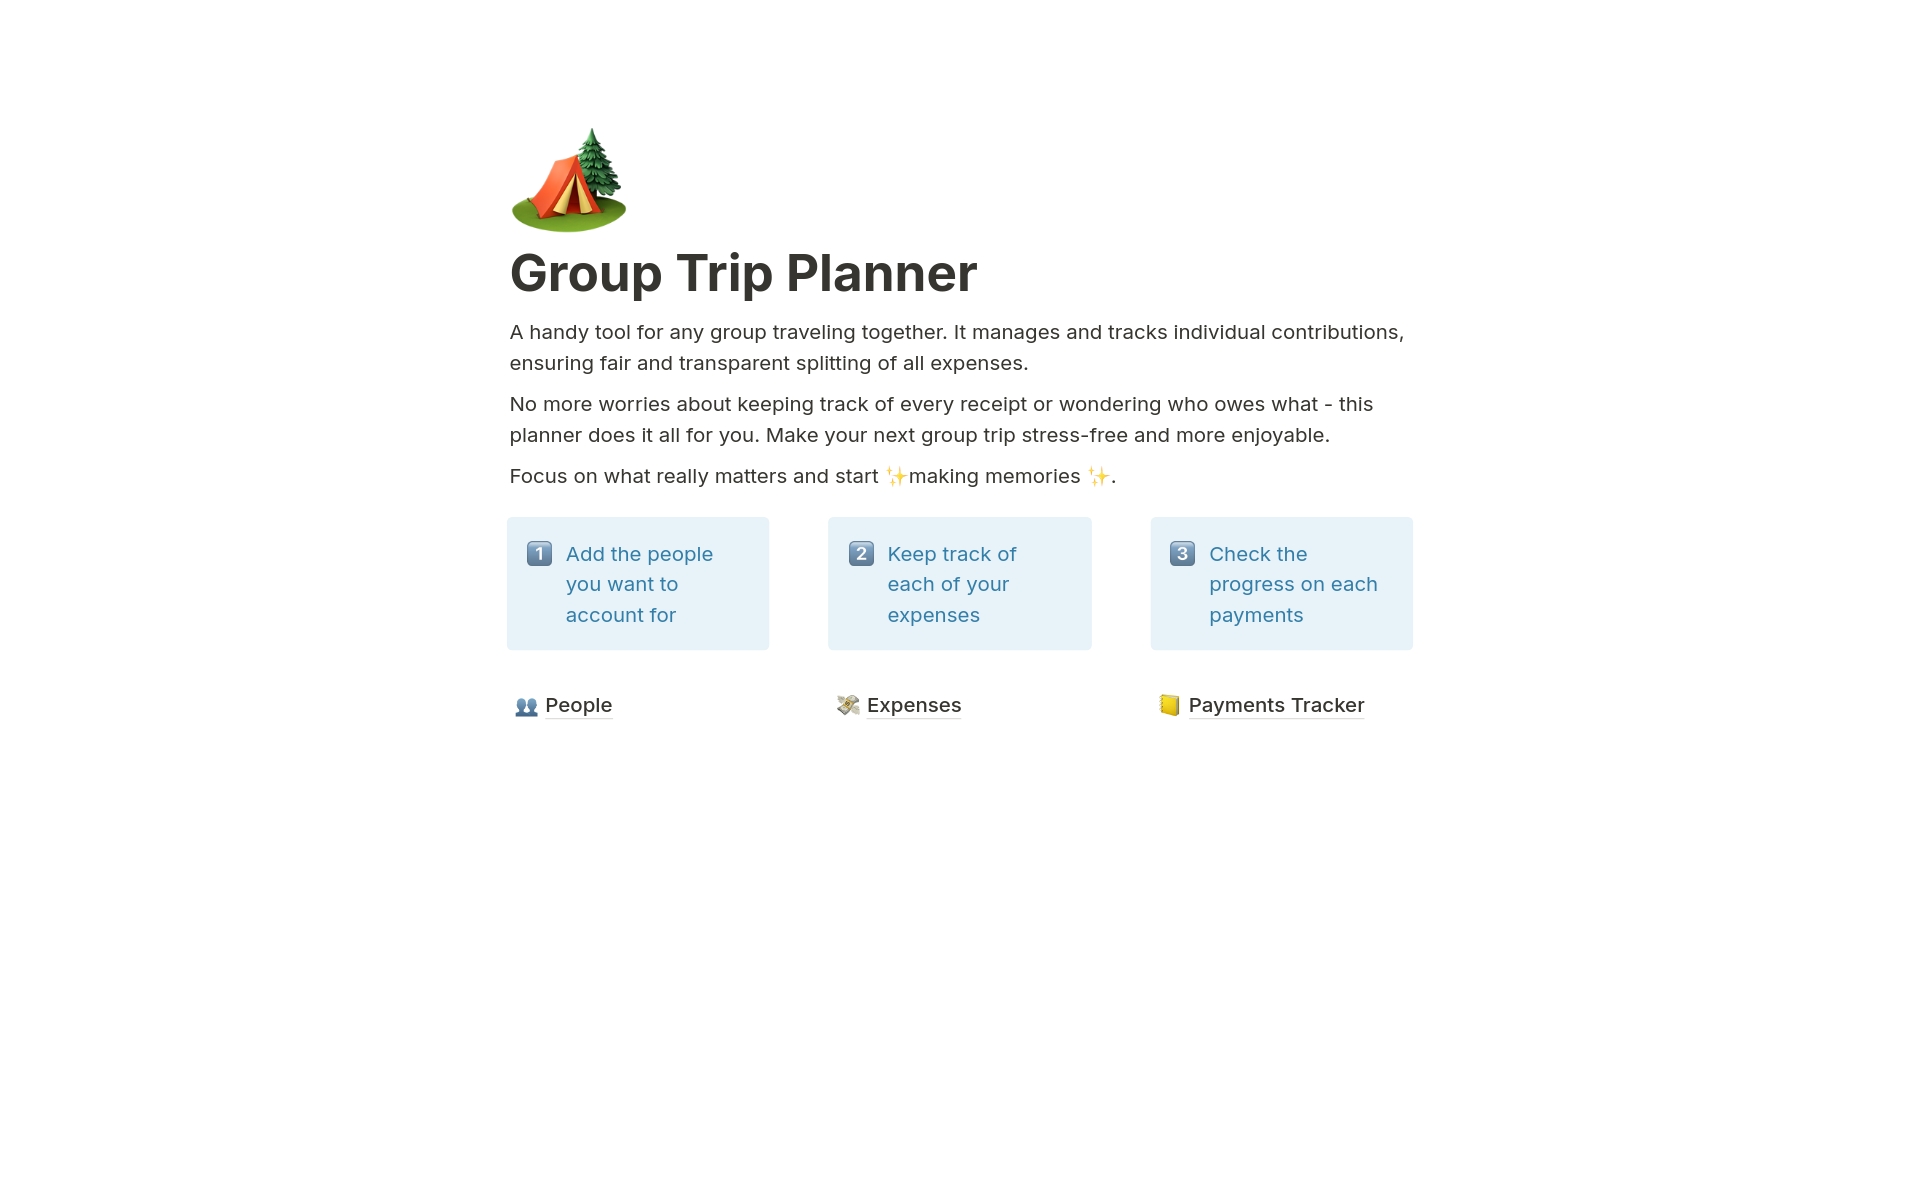 Uma prévia do modelo para Group Trip Planner